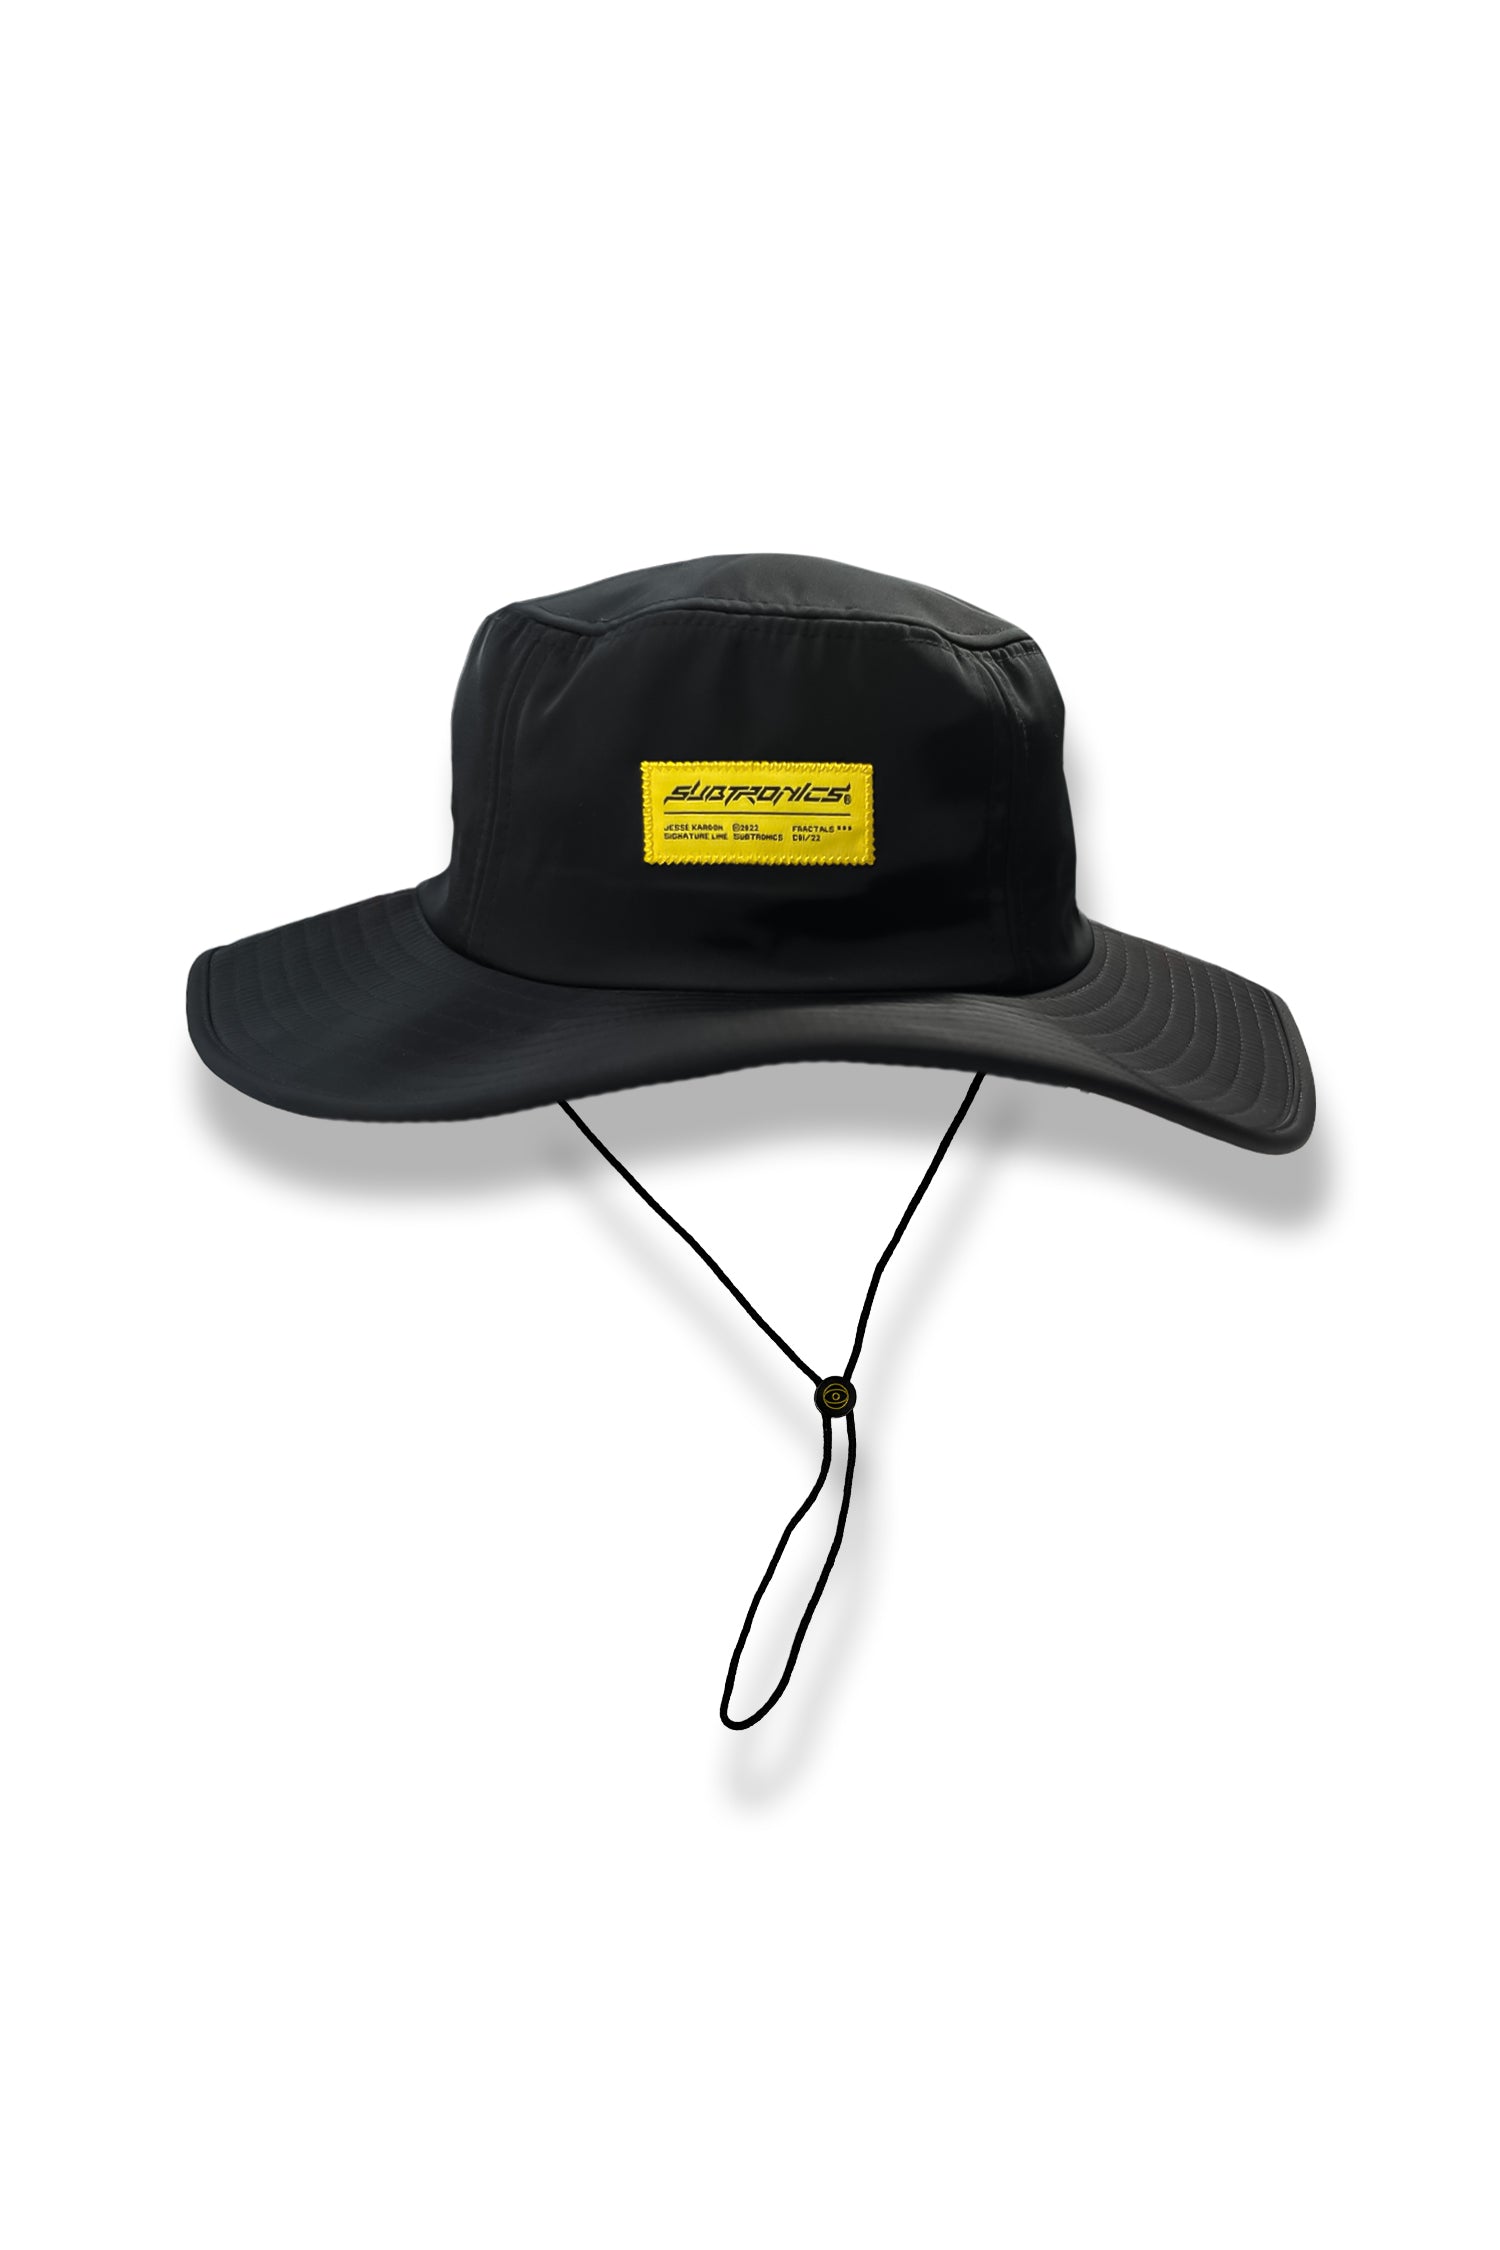 Subtronics Signature Collection - Bush Hat